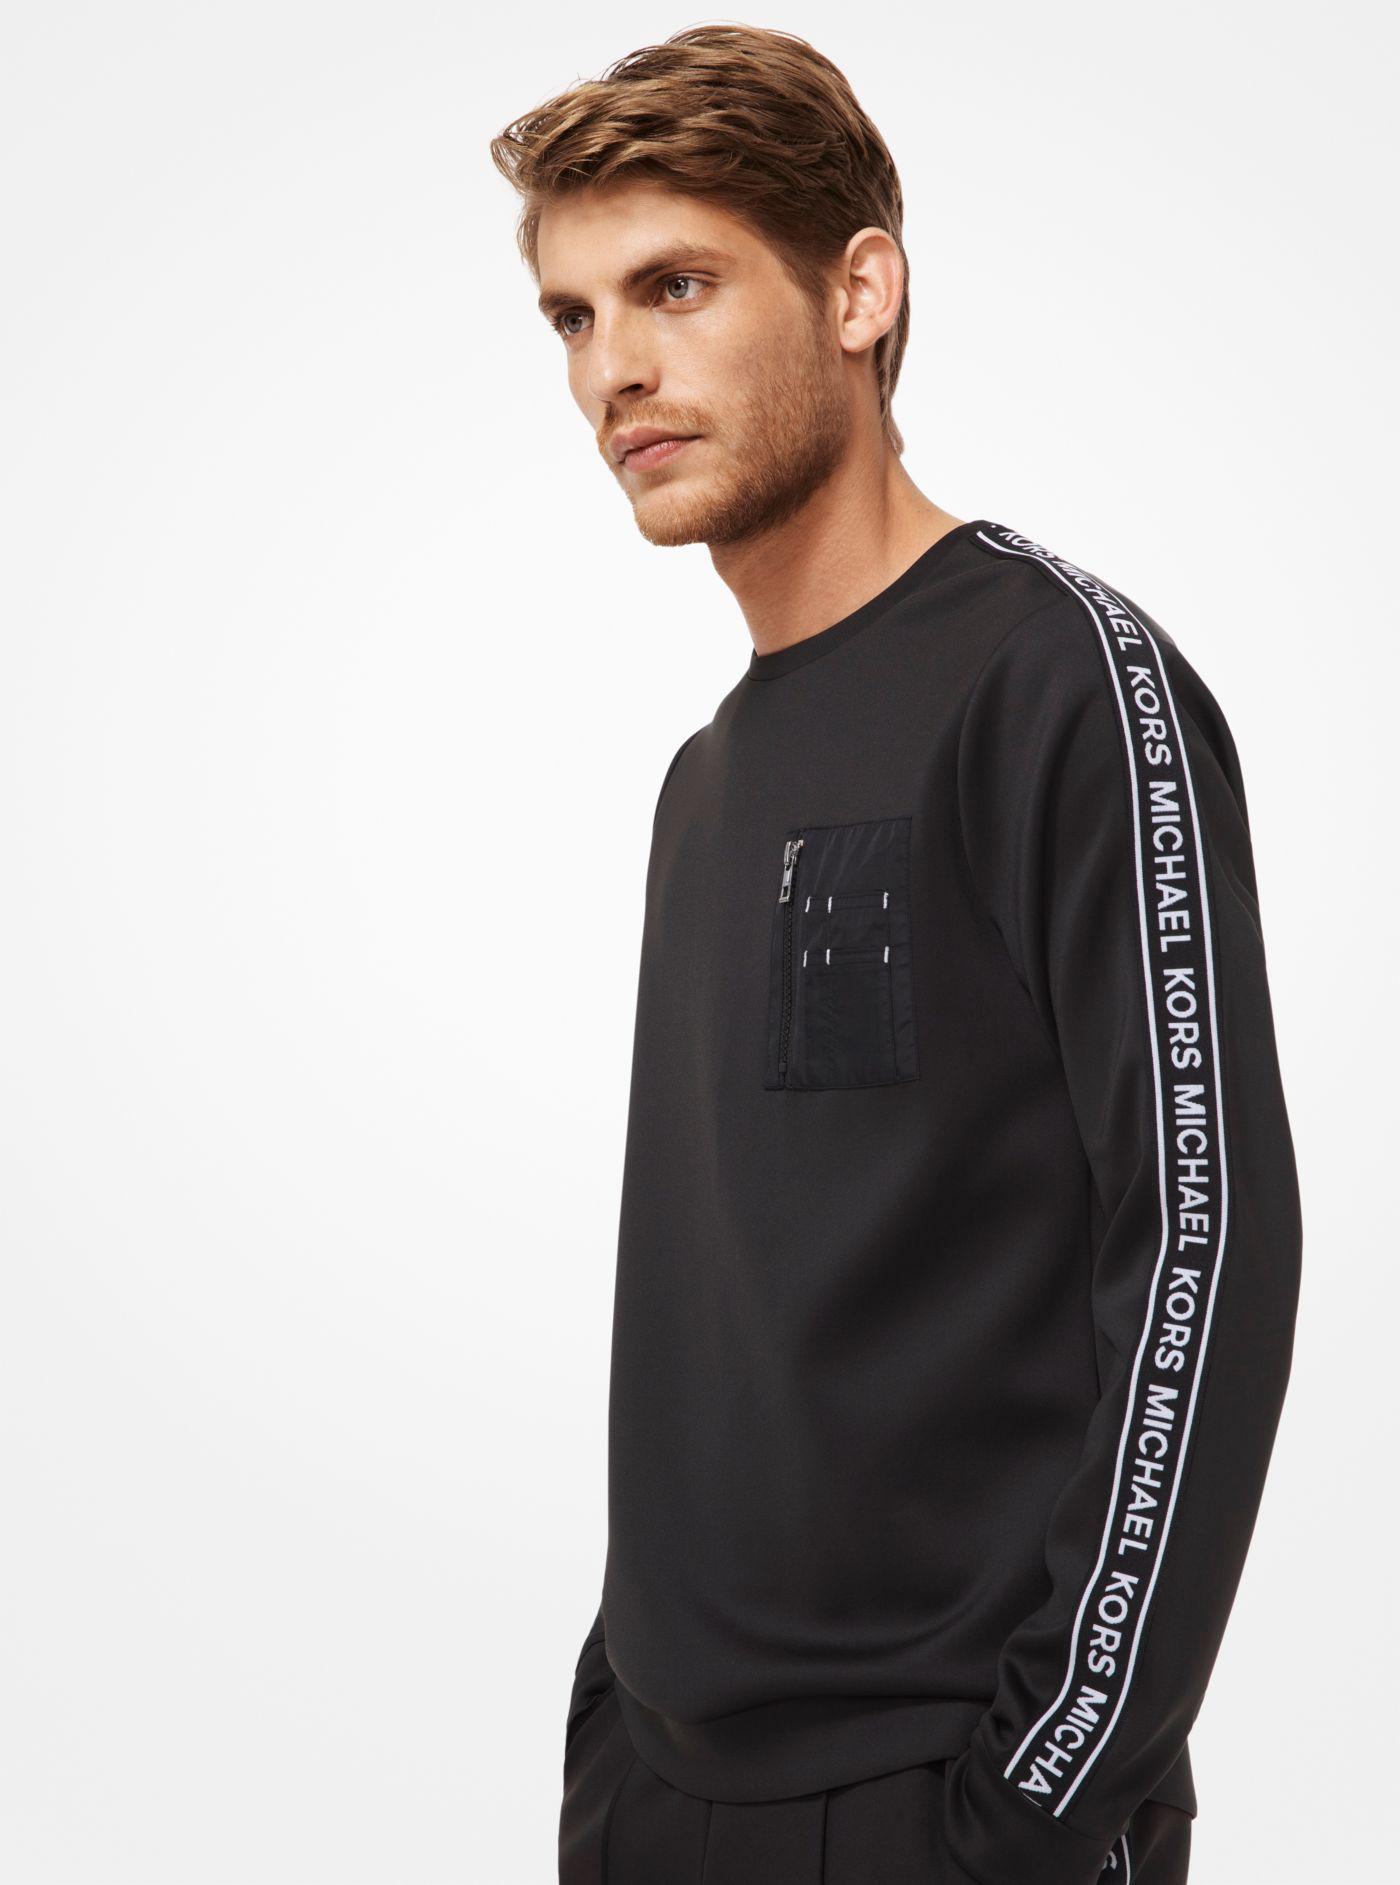 Michael Kors Synthetic Scuba Logo Sweatshirt in Black for Men - Lyst